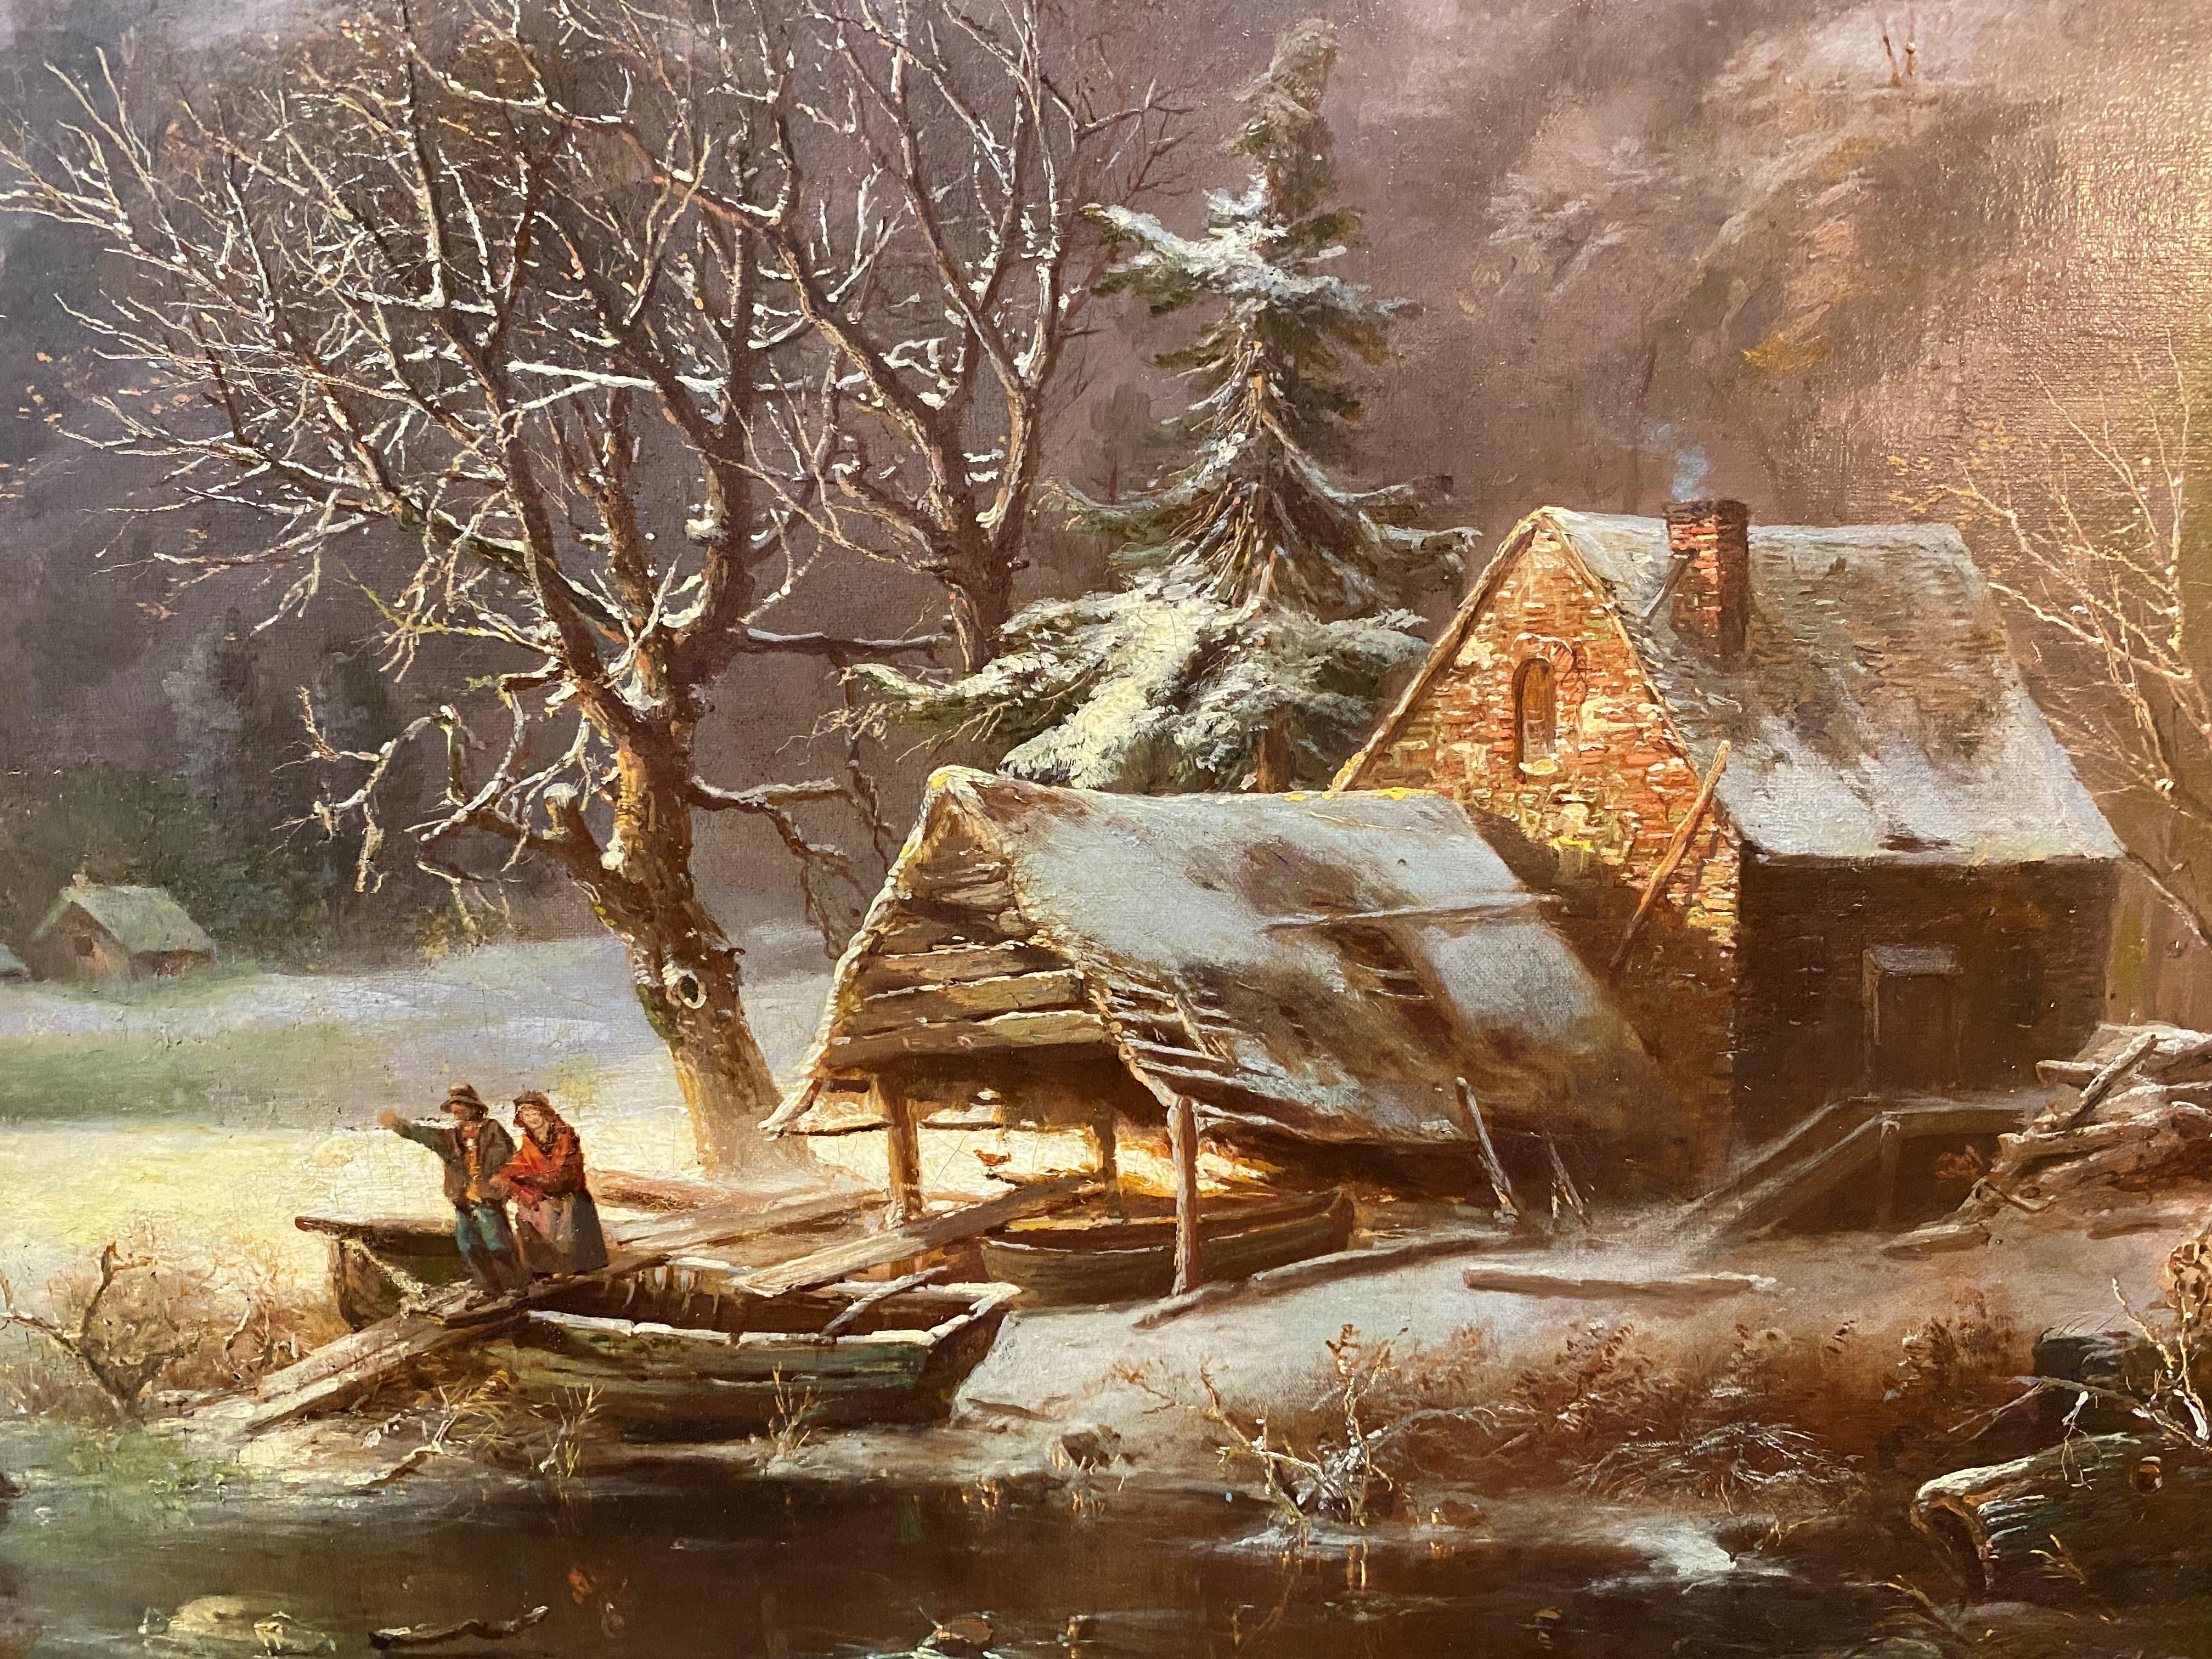 Un beau paysage d'hiver avec une scène de patinage par l'artiste franco-américain Regy (1816-1882). Gignoux est né à Lyon, en France, et a commencé ses études à Fribourg, en Suisse, puis à l'Académie Saint-Pierre de Lyon, en France, qui était